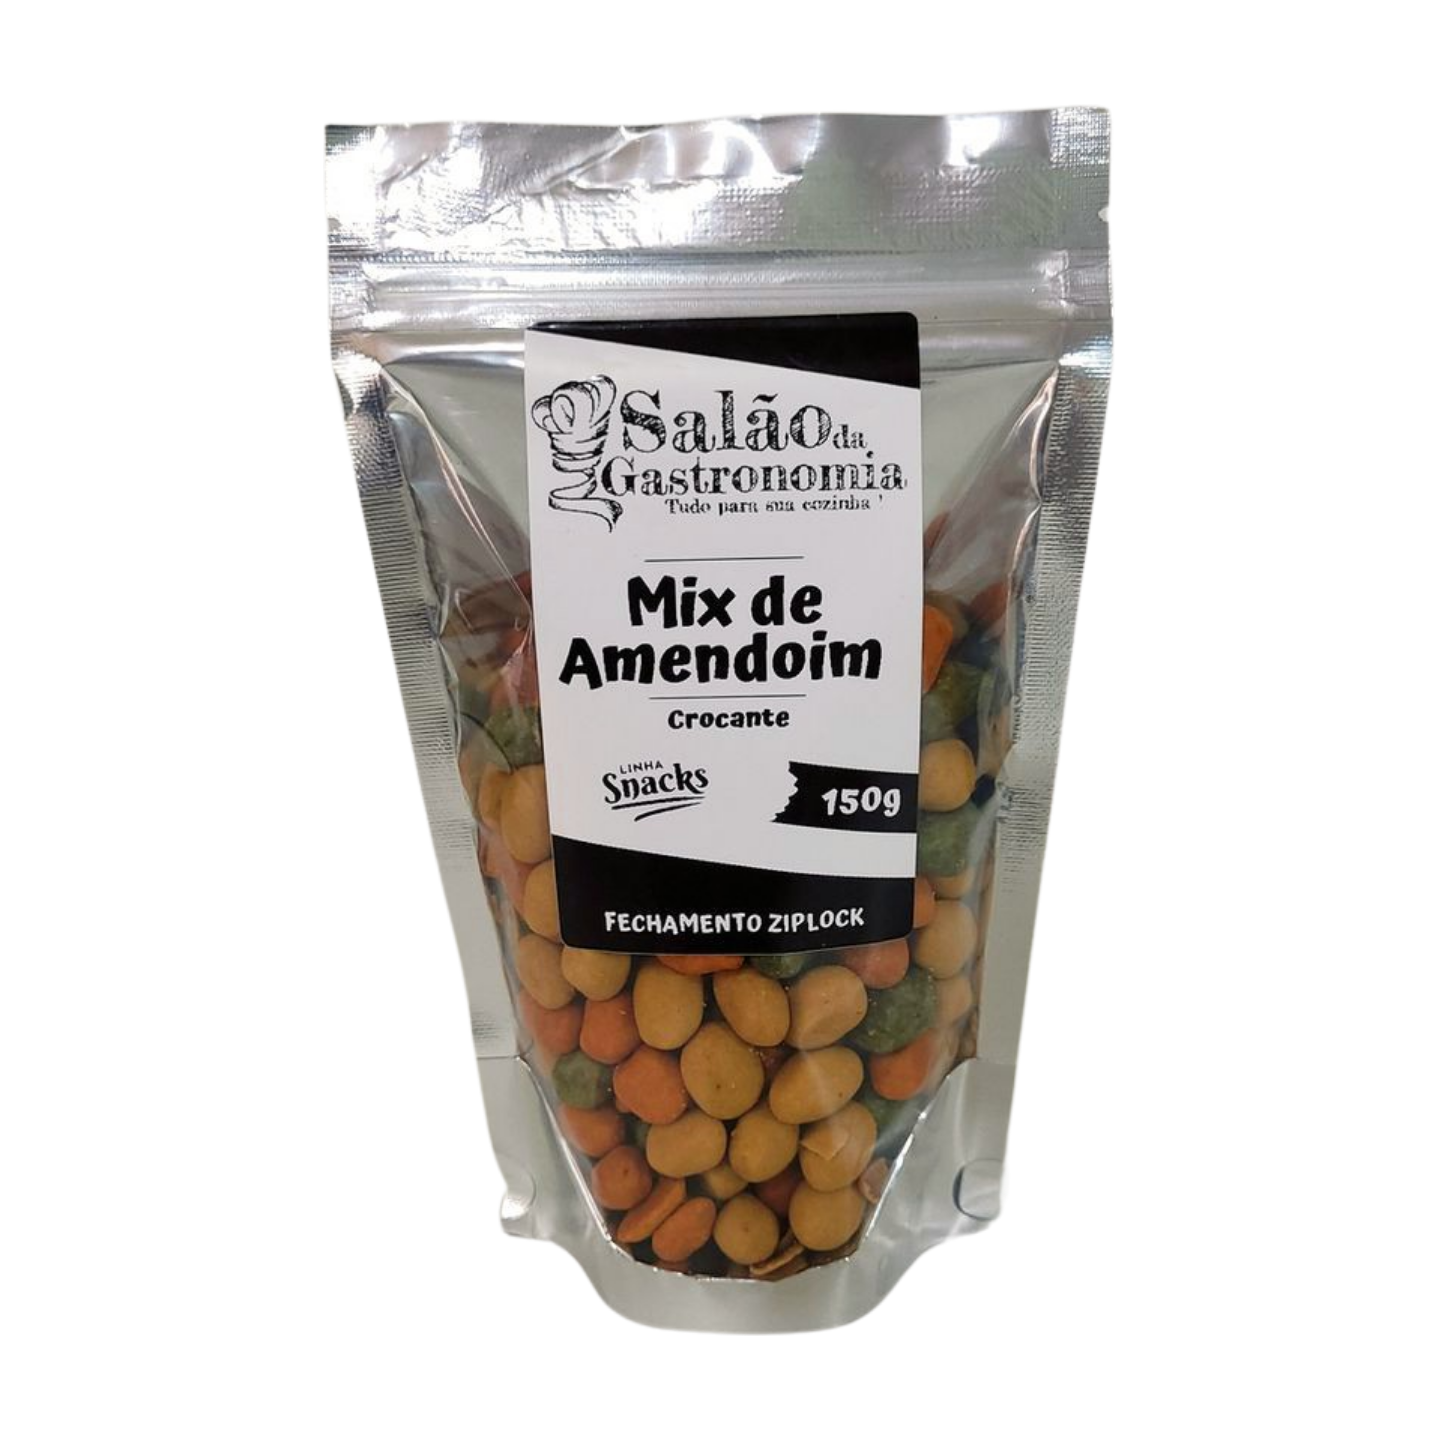 Mix de Amendoim Crocante